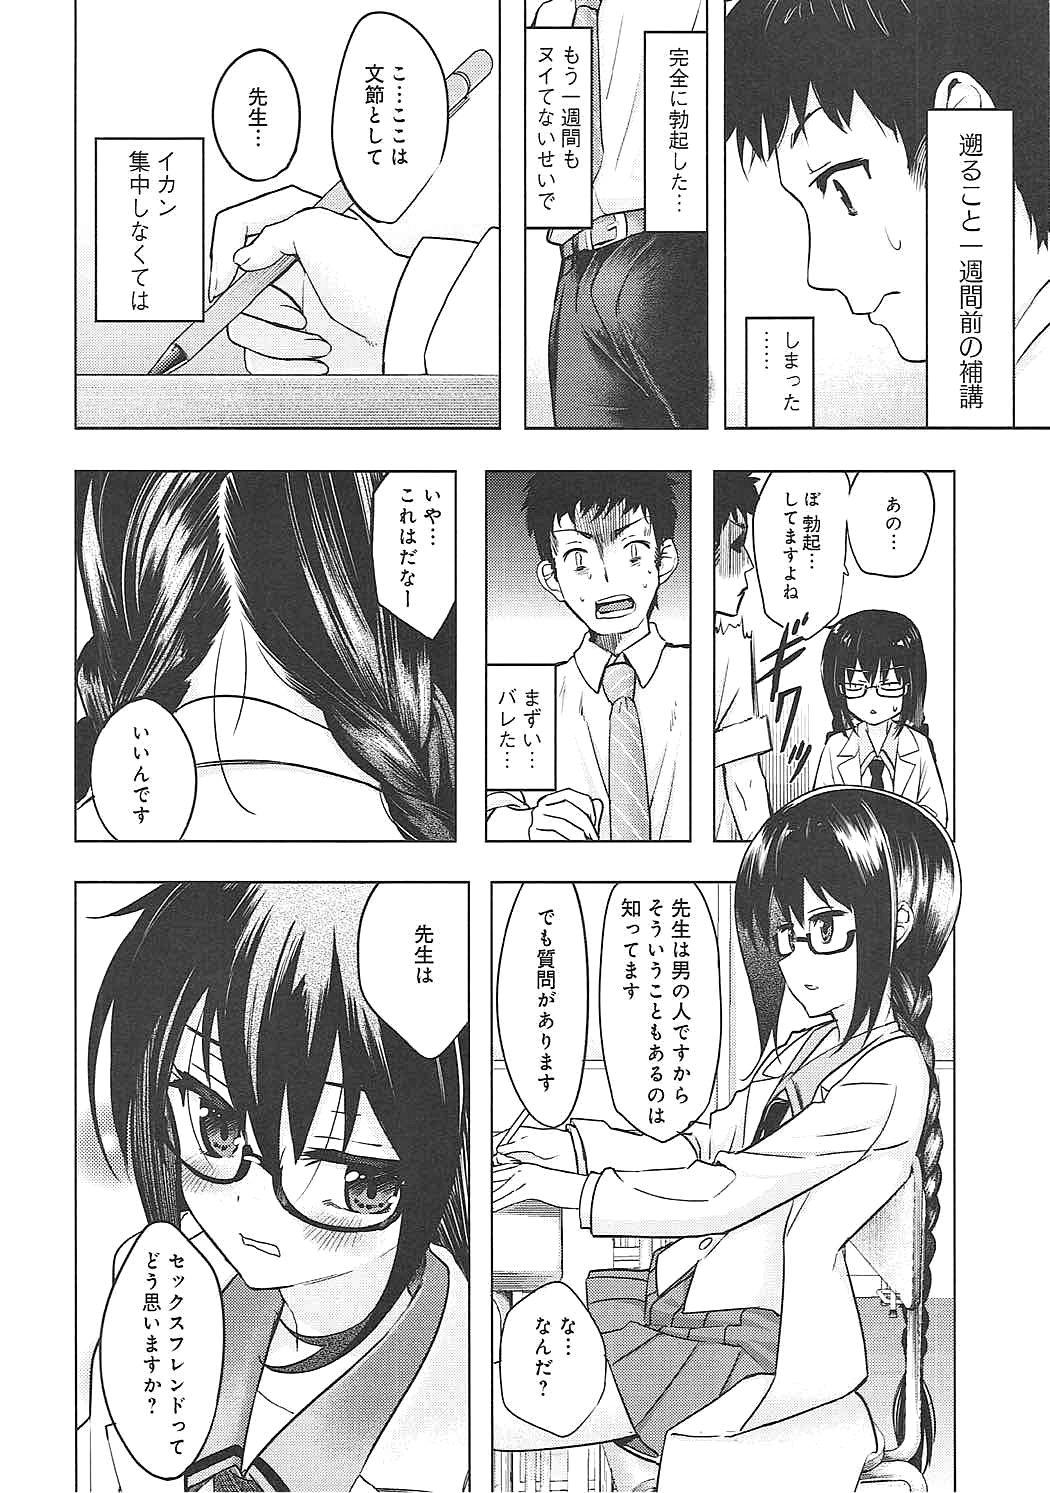 Teen Sex Watashi wa Sensei no Shikotomo desu! - Omaera zenin mendokusai Phat - Page 5